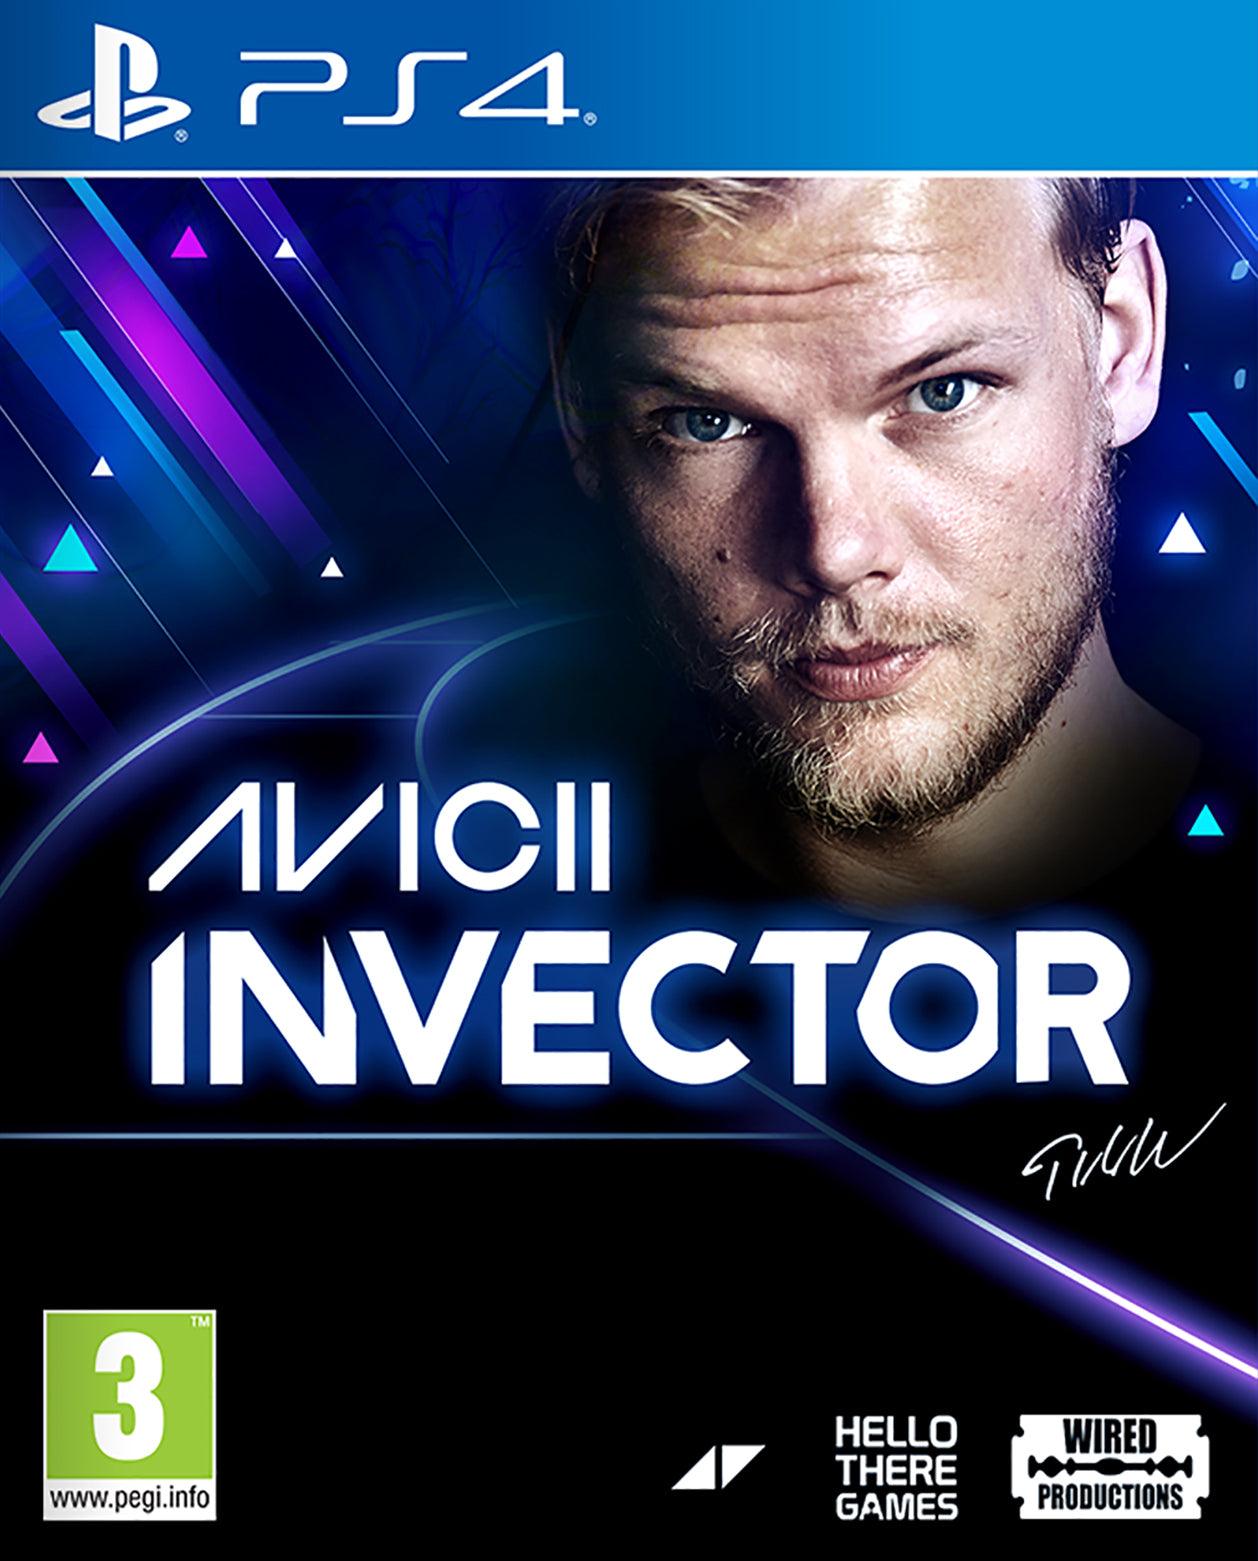 Invector Avicii - Want a New Gadget